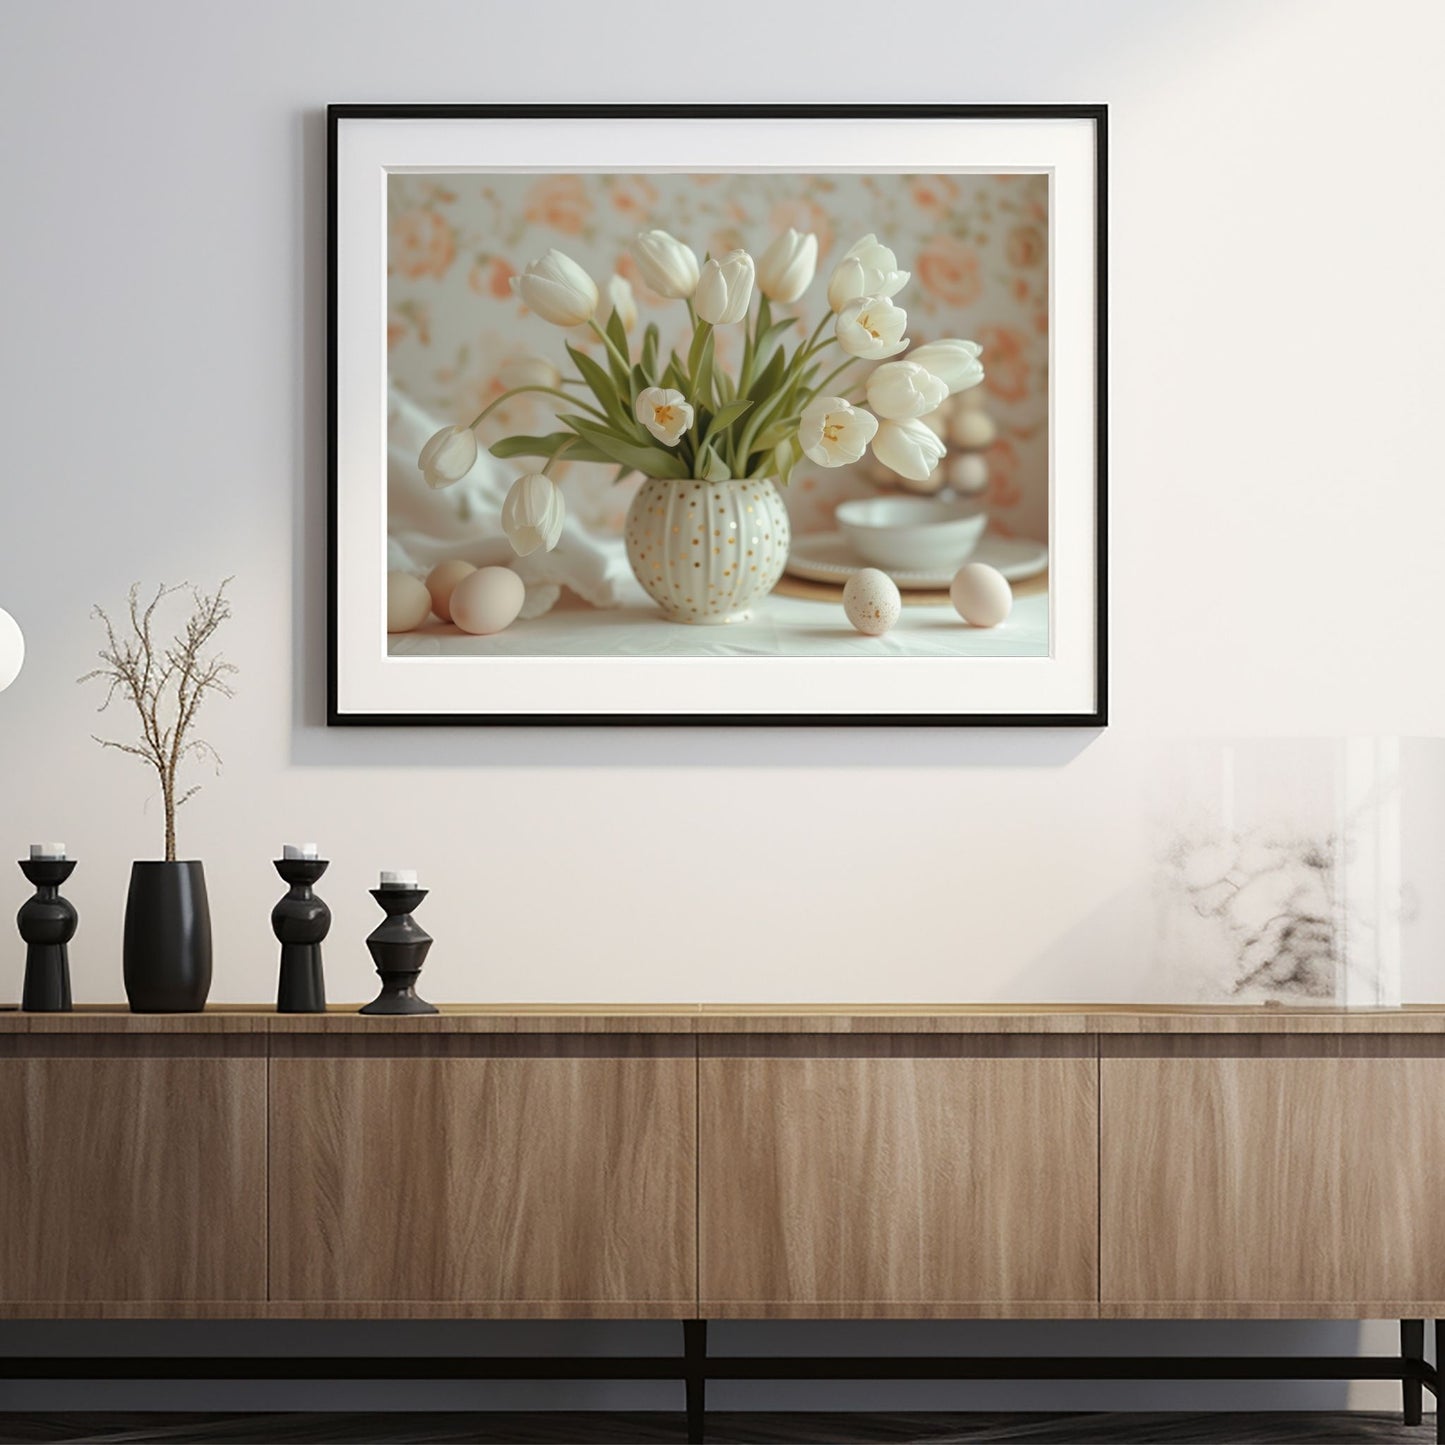 Grafisk illustrasjon av en rund, hvit vase med gullprikker, fylt med hvite tulipaner. Ved siden av vase ligger noen hvite påskeeg. Illustrasjonsbilde av plakat i sort ramme som henger på en vegg over en sjenk.